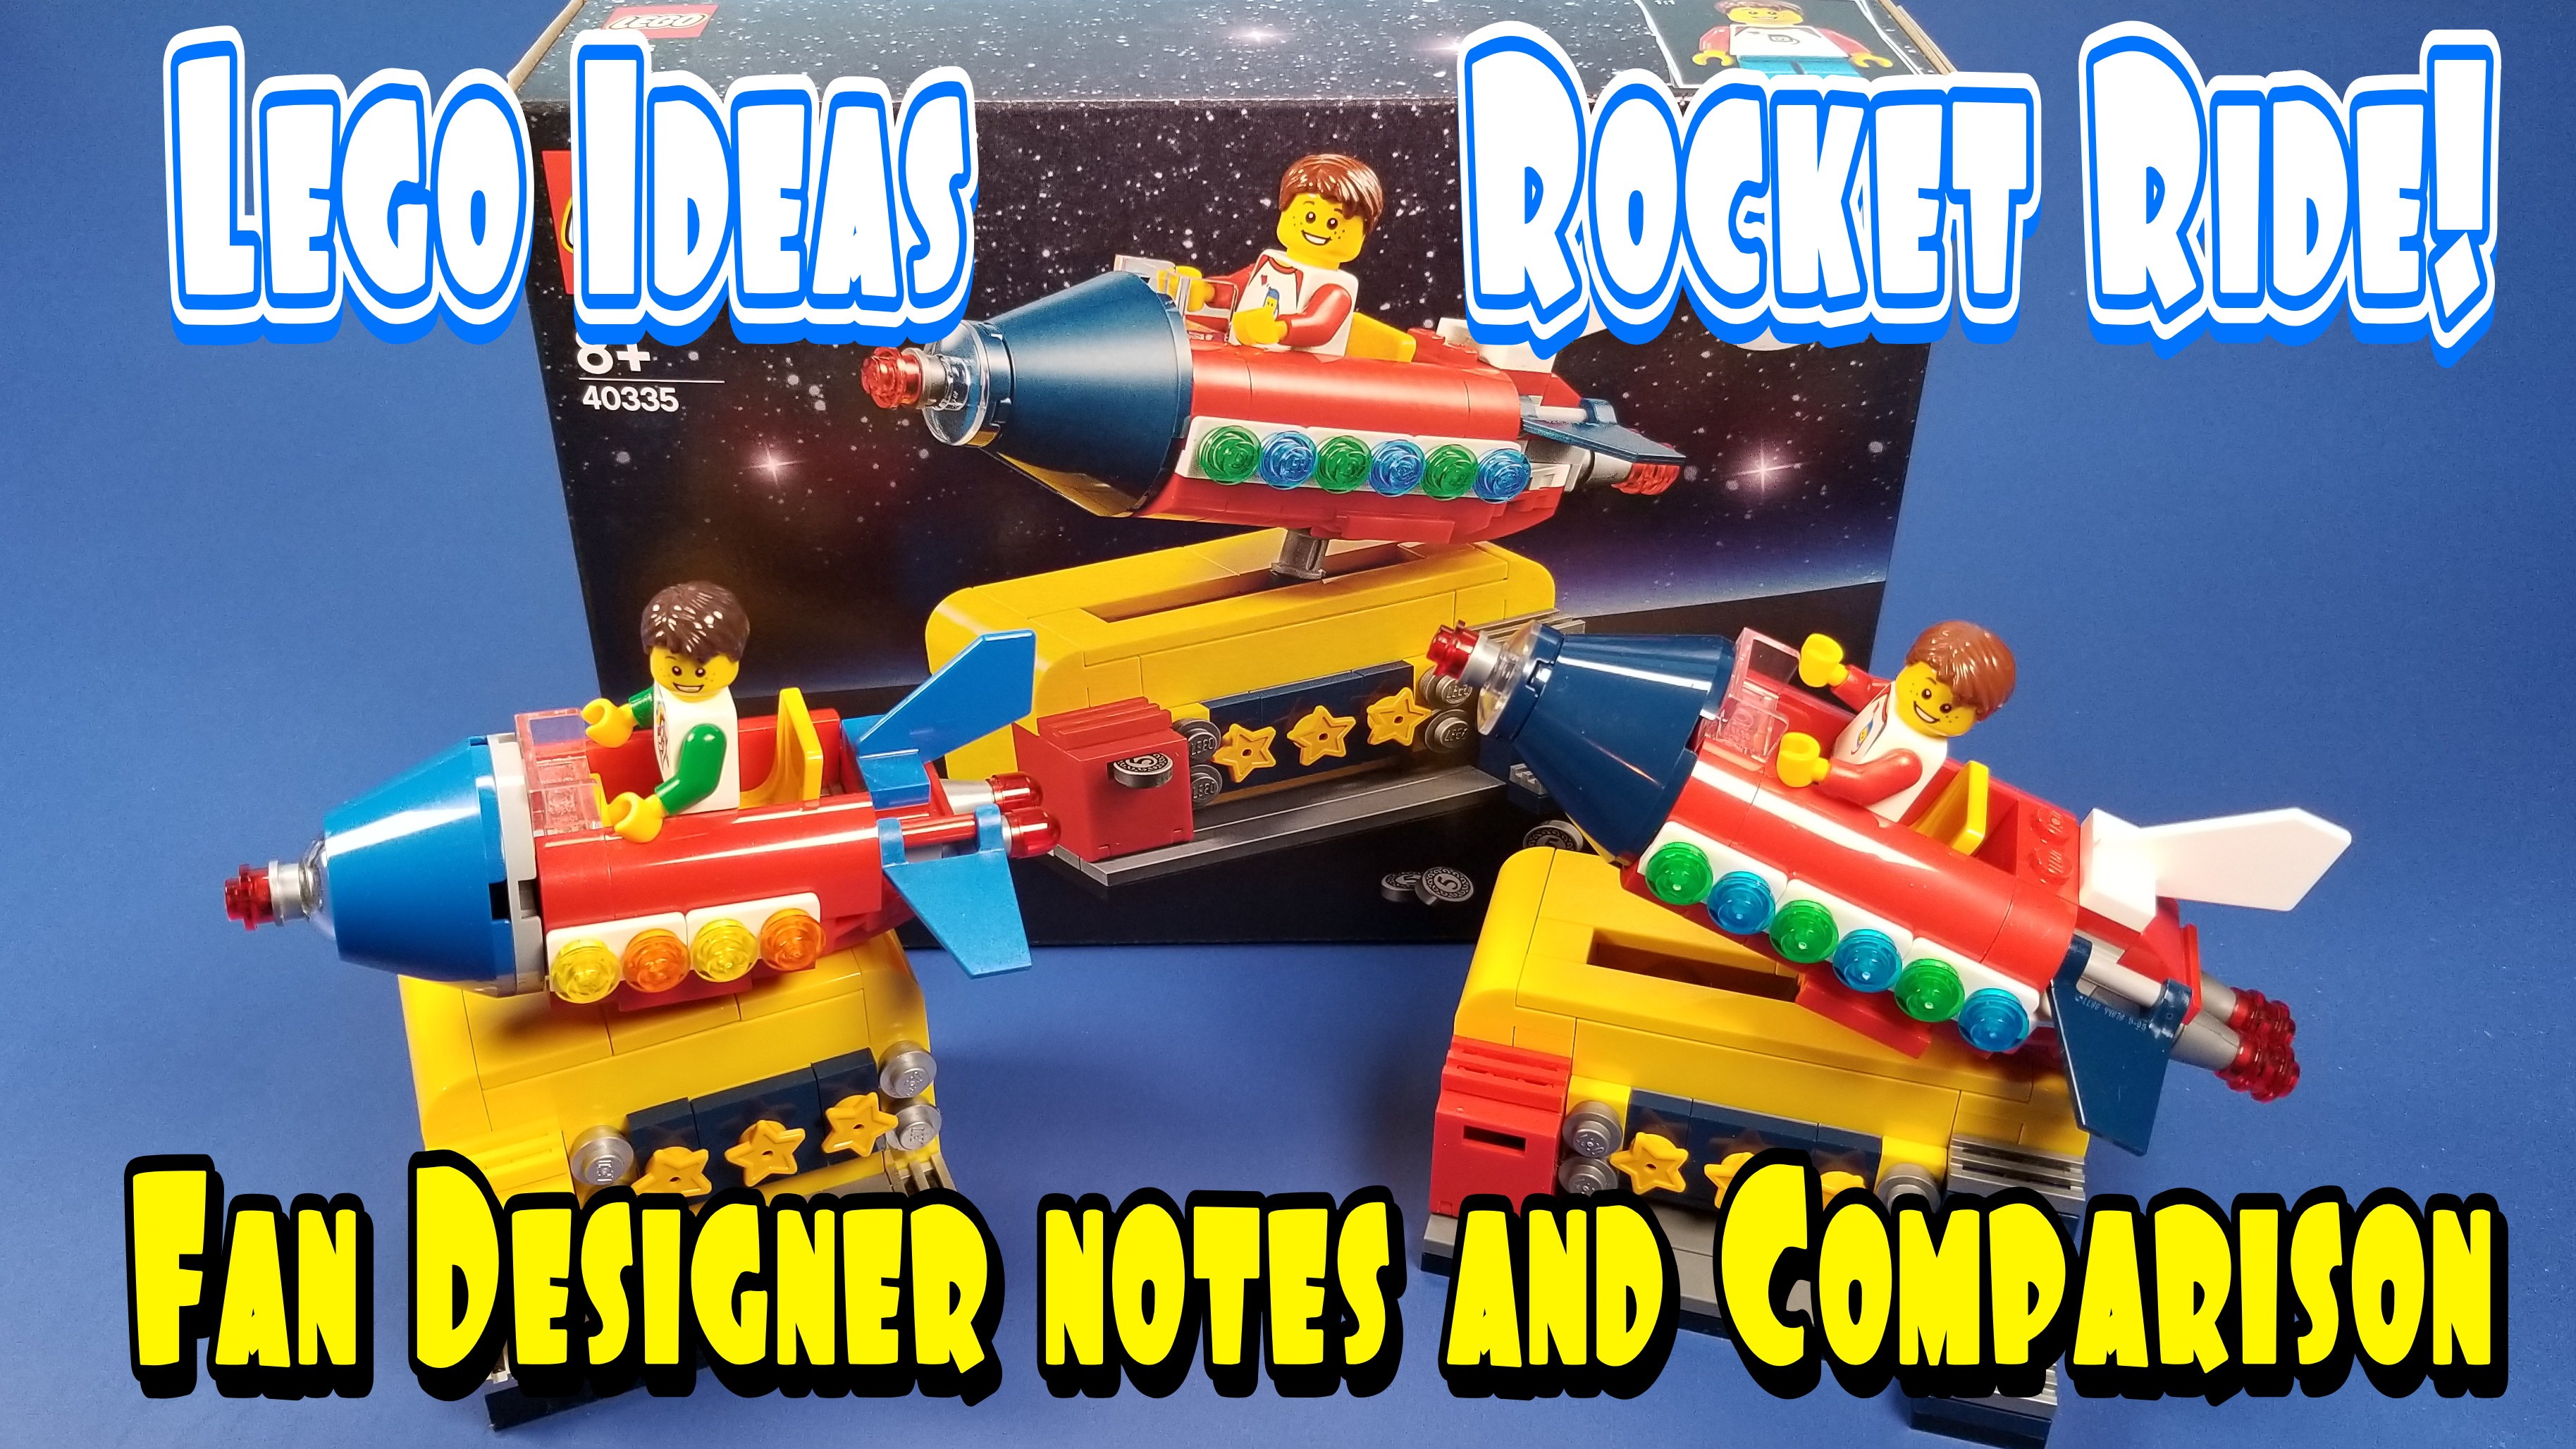 Lego Ideas 40335 Rocket Ride! – Fan Designer